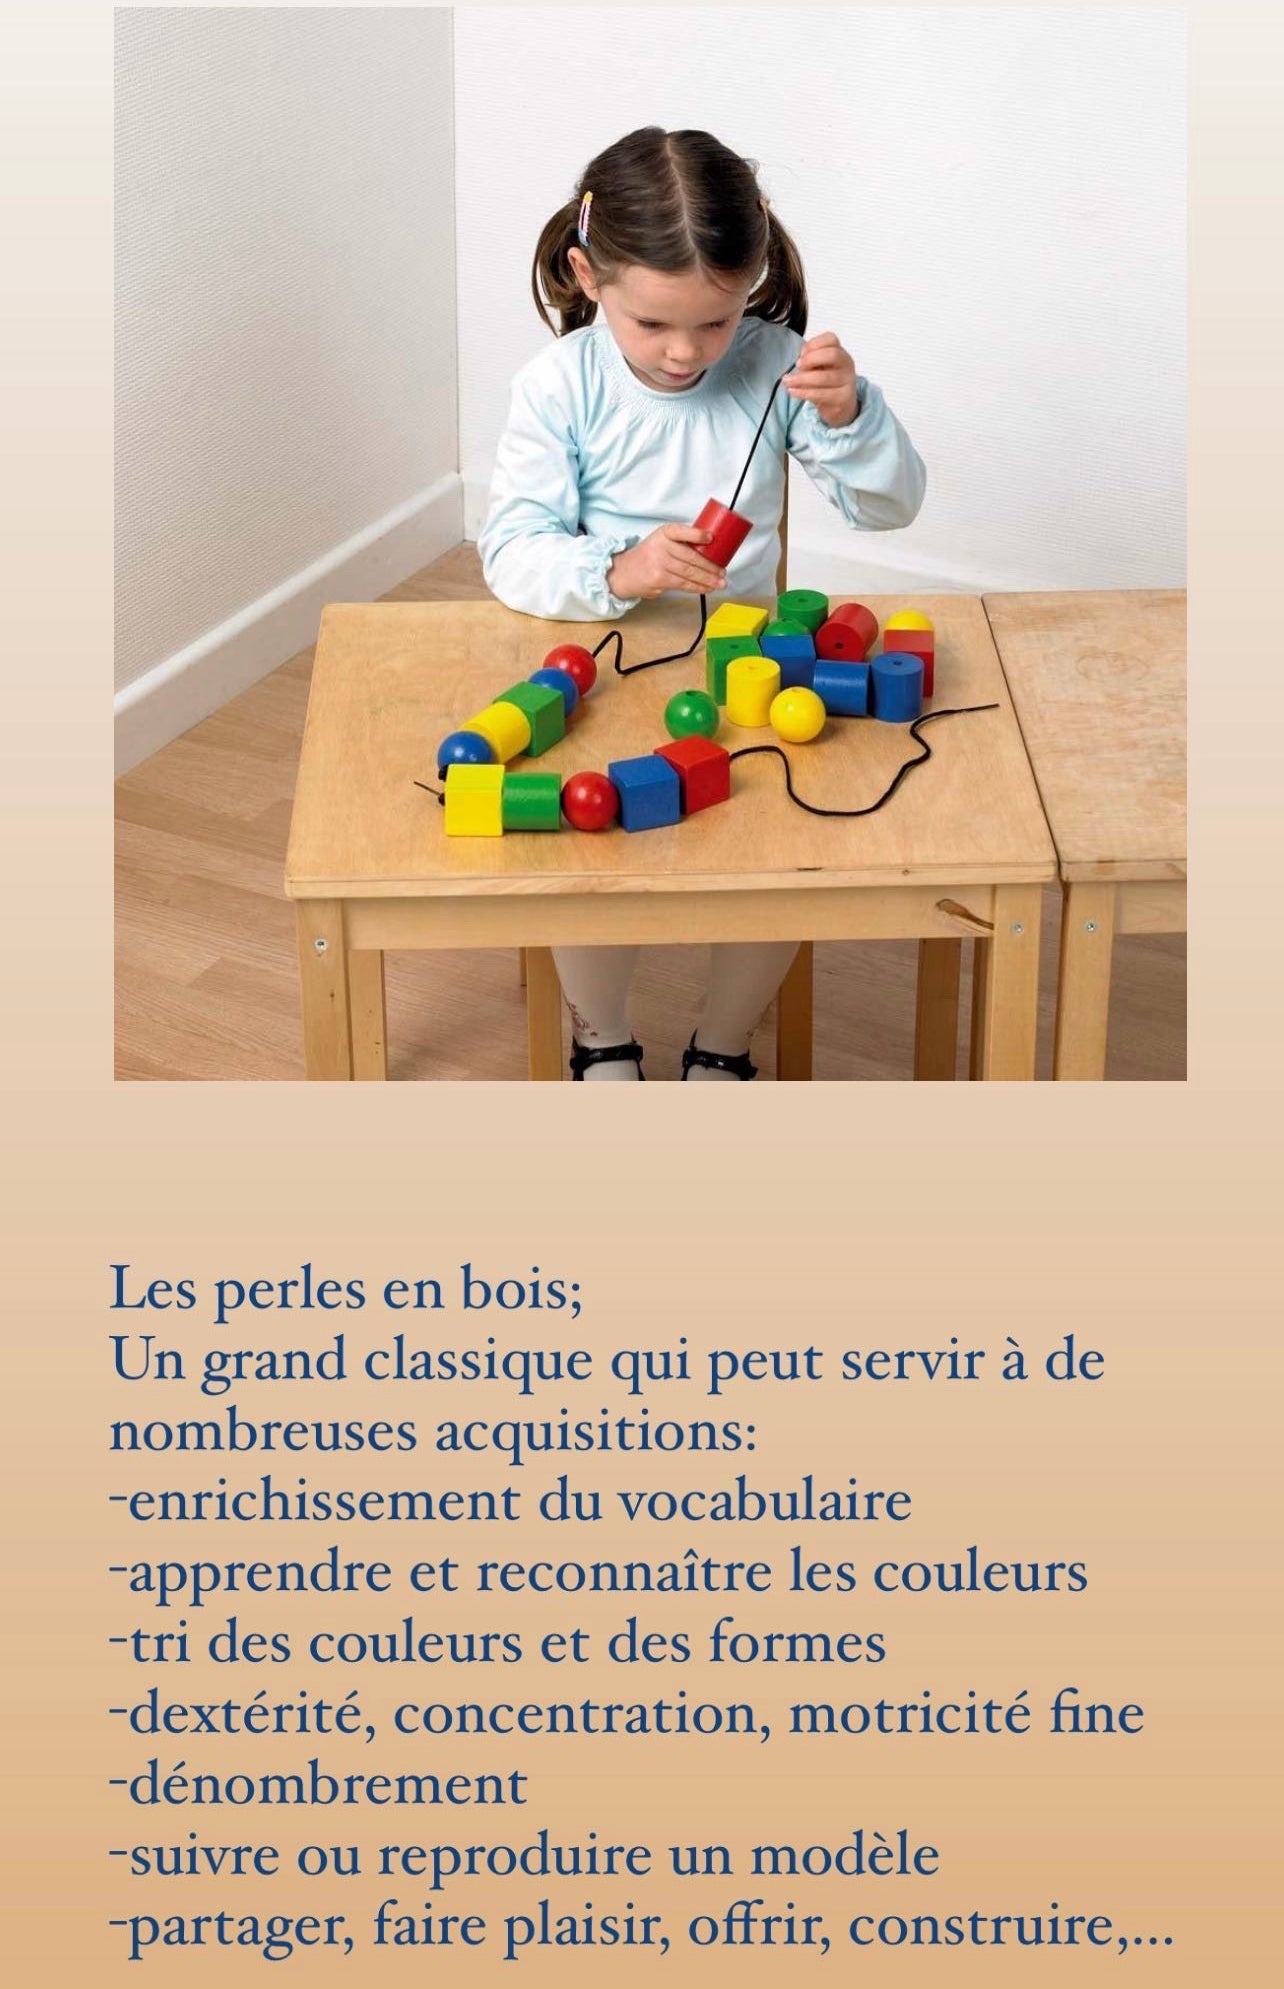 Montessori | Construction, assemblage et couleur